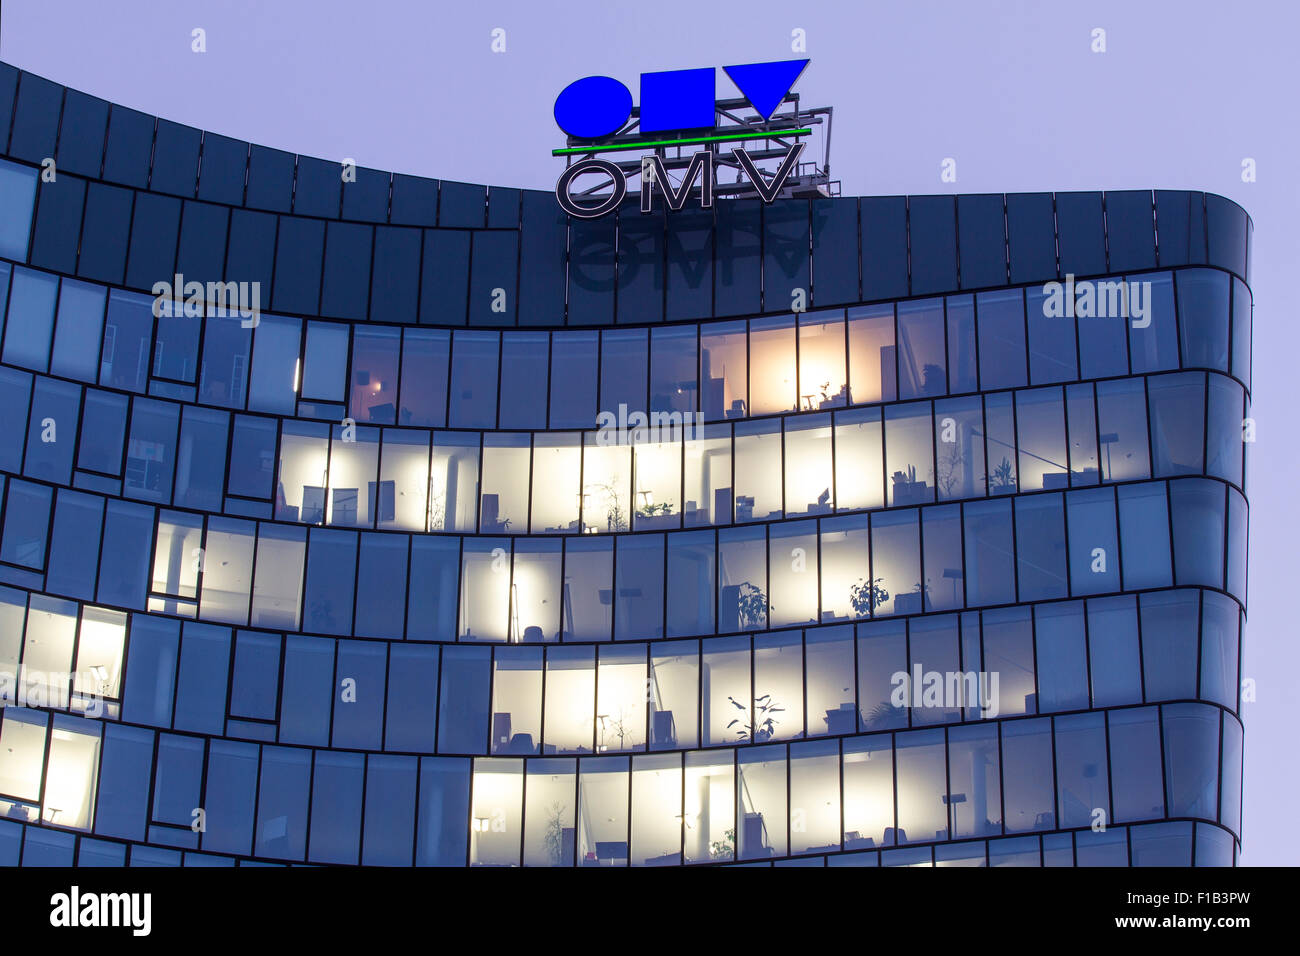 Edificio per uffici hoch zwei, hoch zwei, OMV, austriaca olio minerale administration, Vienna, Austria Foto Stock